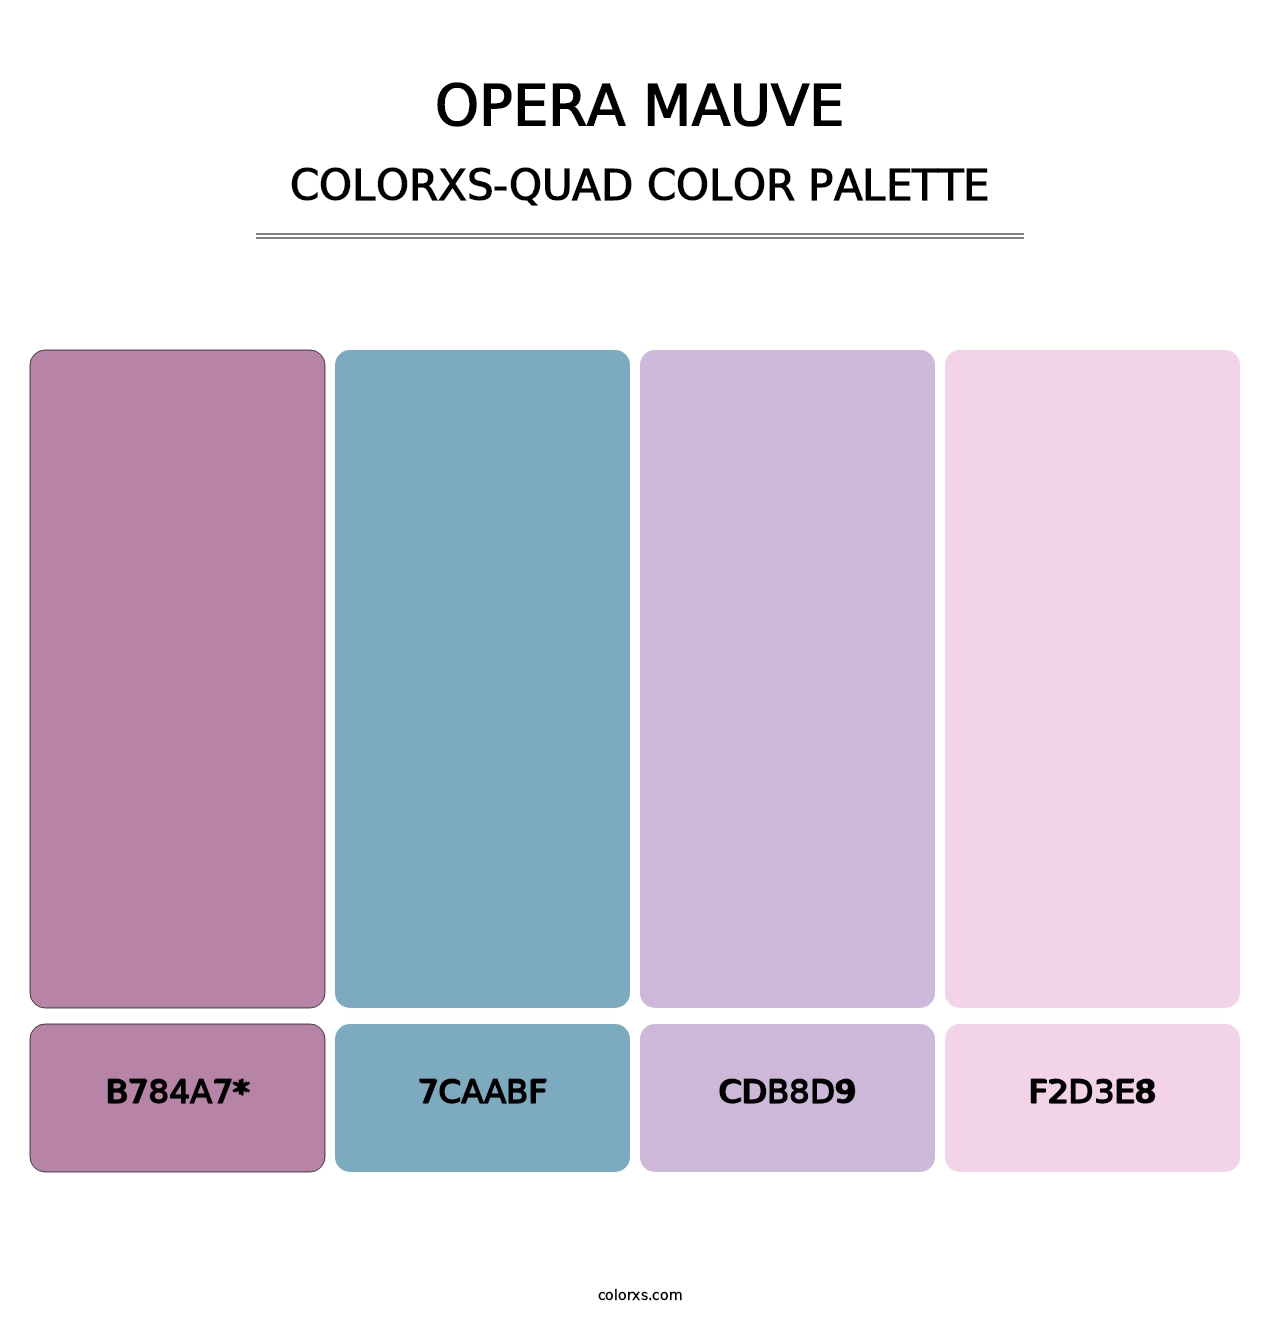 Opera Mauve - Colorxs Quad Palette